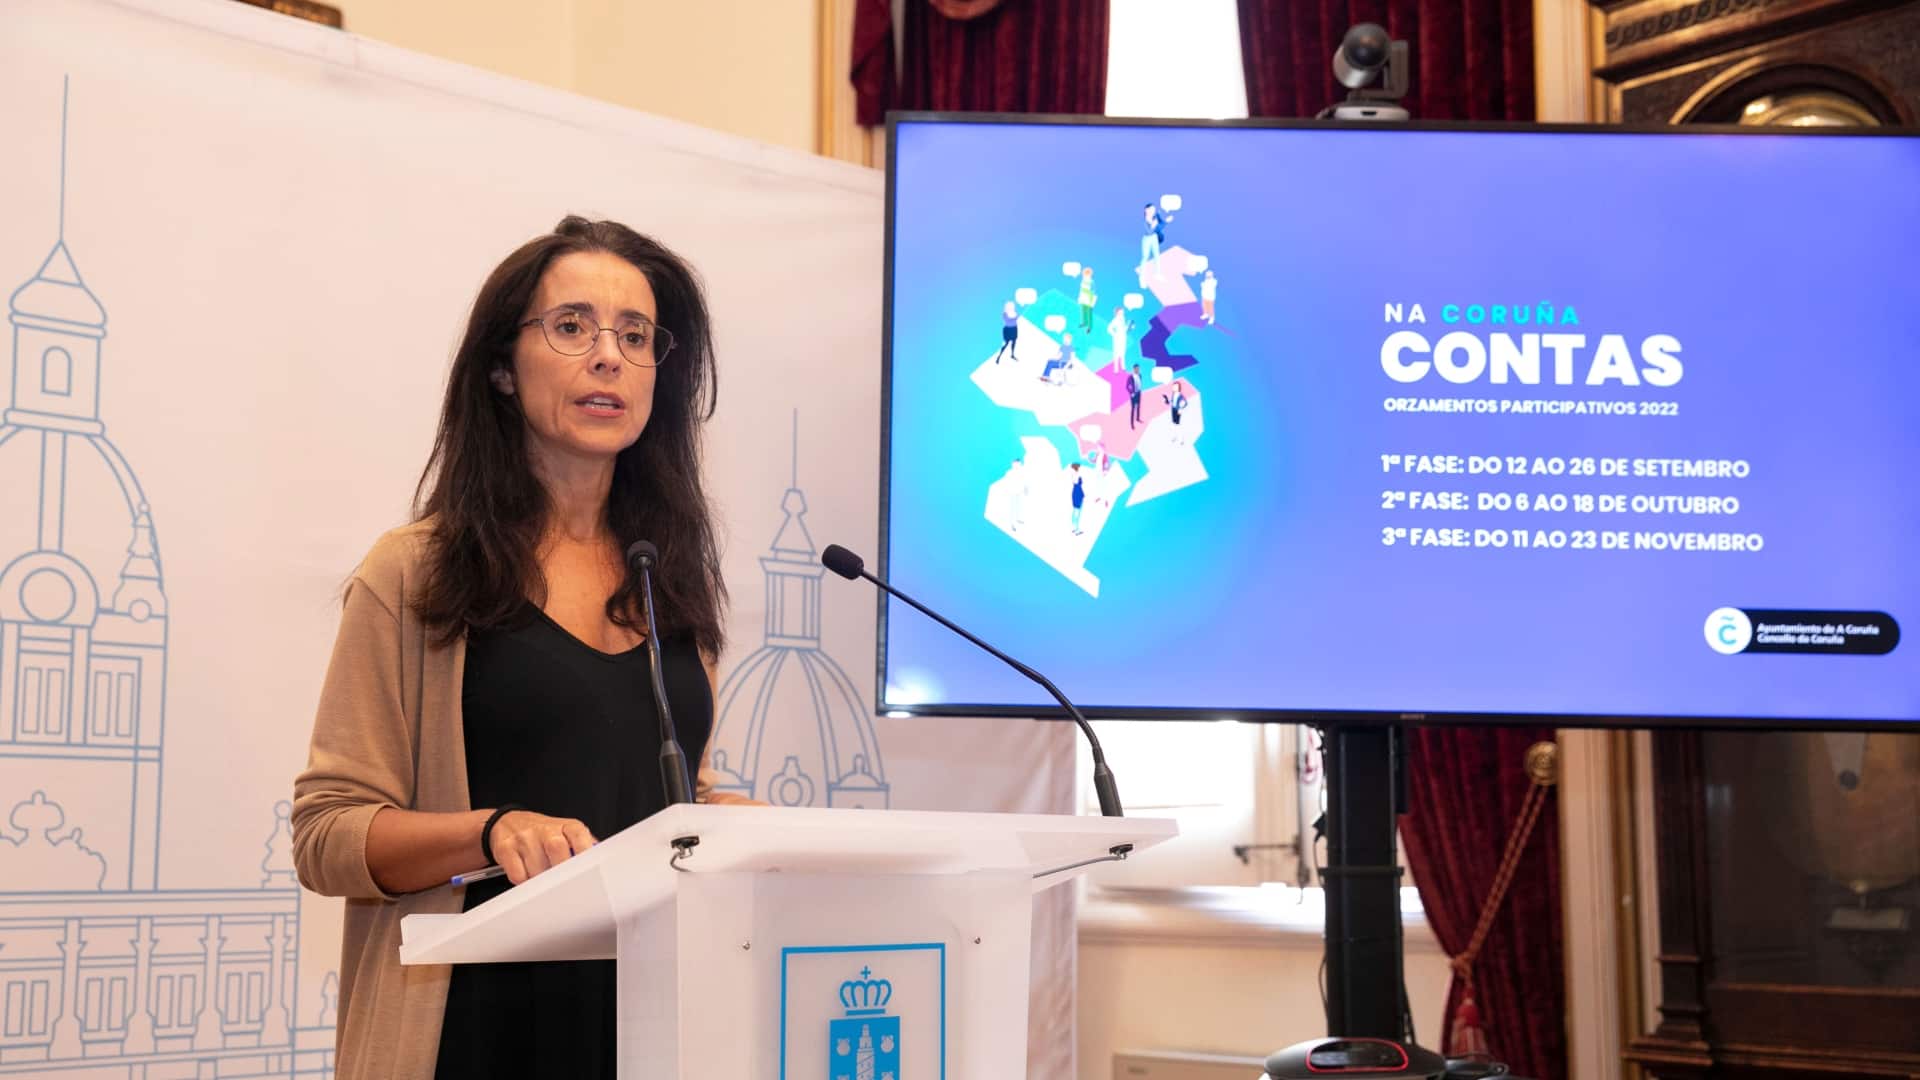 La concelleira de Participacion, Yoya Neira, presentando los Orzamentos Participativos | CONCELLO DA CORUÑA